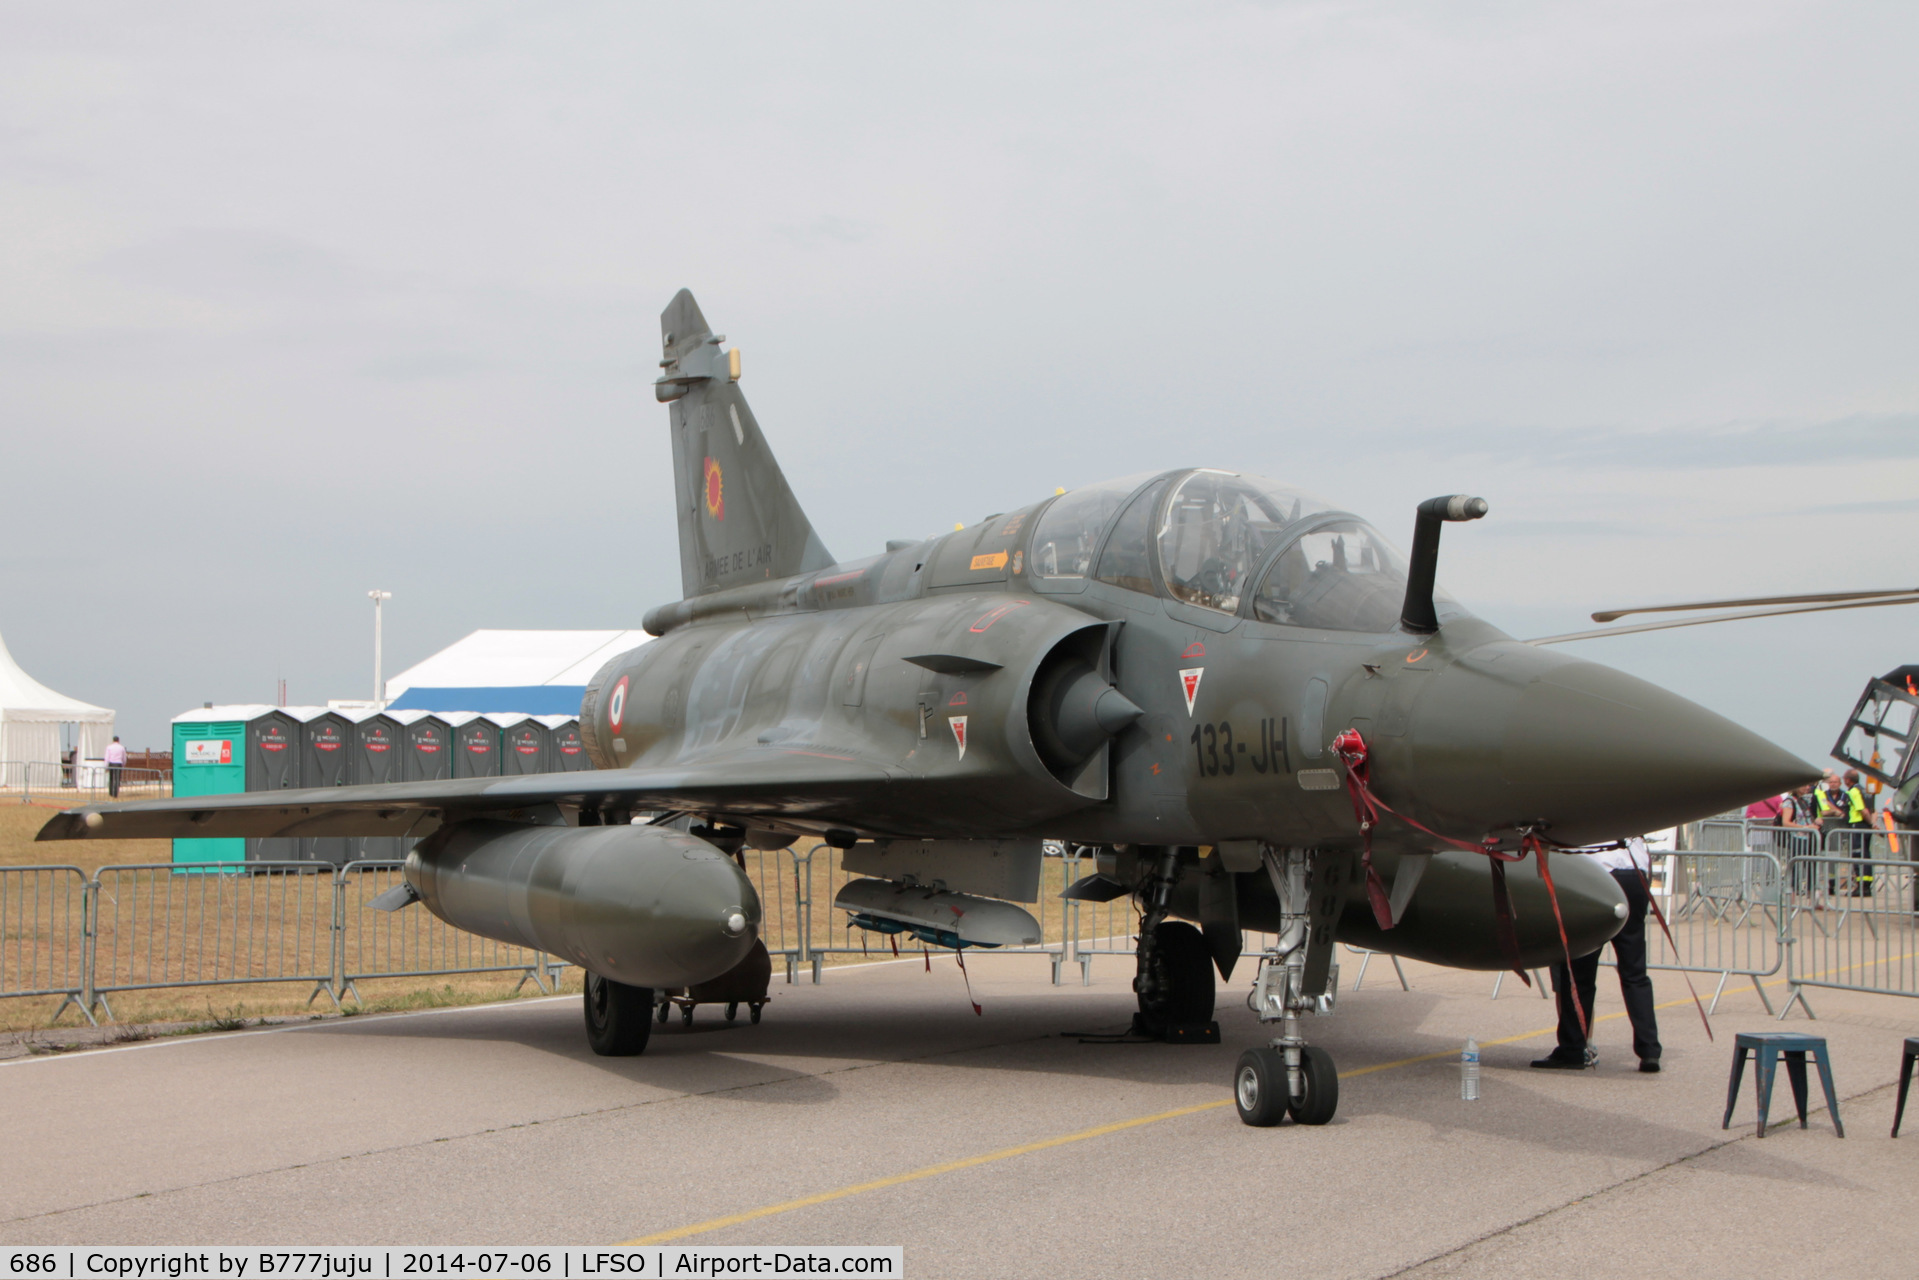 686, Dassault Mirage 2000D C/N 686, at Nancy-Ochey